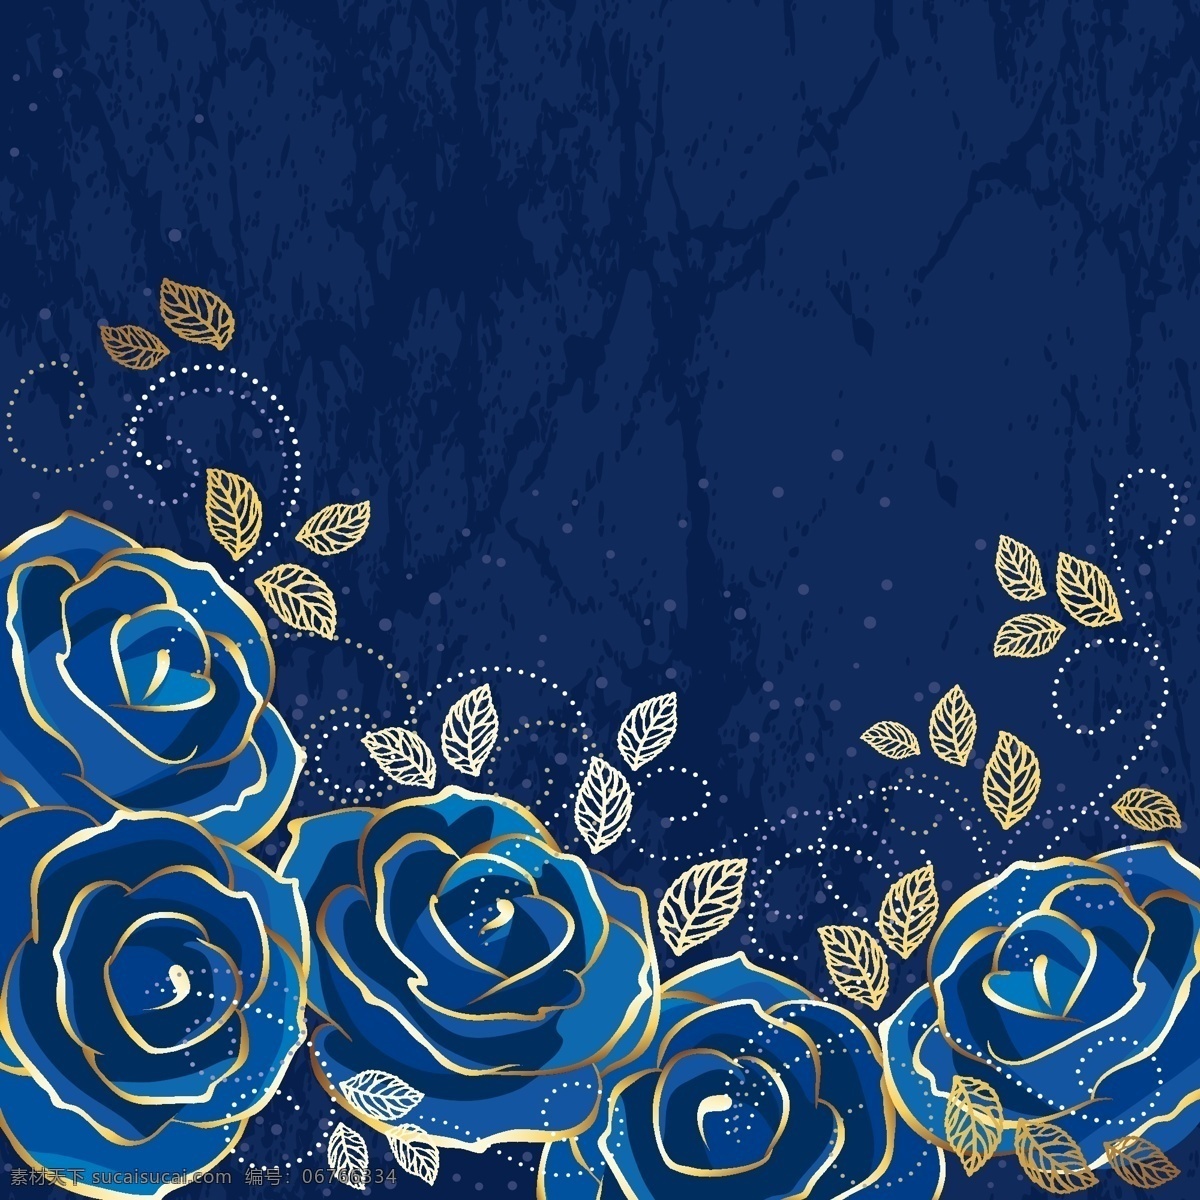 蓝玫瑰图片 蓝色玫瑰 背景 玫瑰矢量素材 蓝玫瑰 金边 高贵 蓝色背景 矢量素材 标识 生物世界 花草